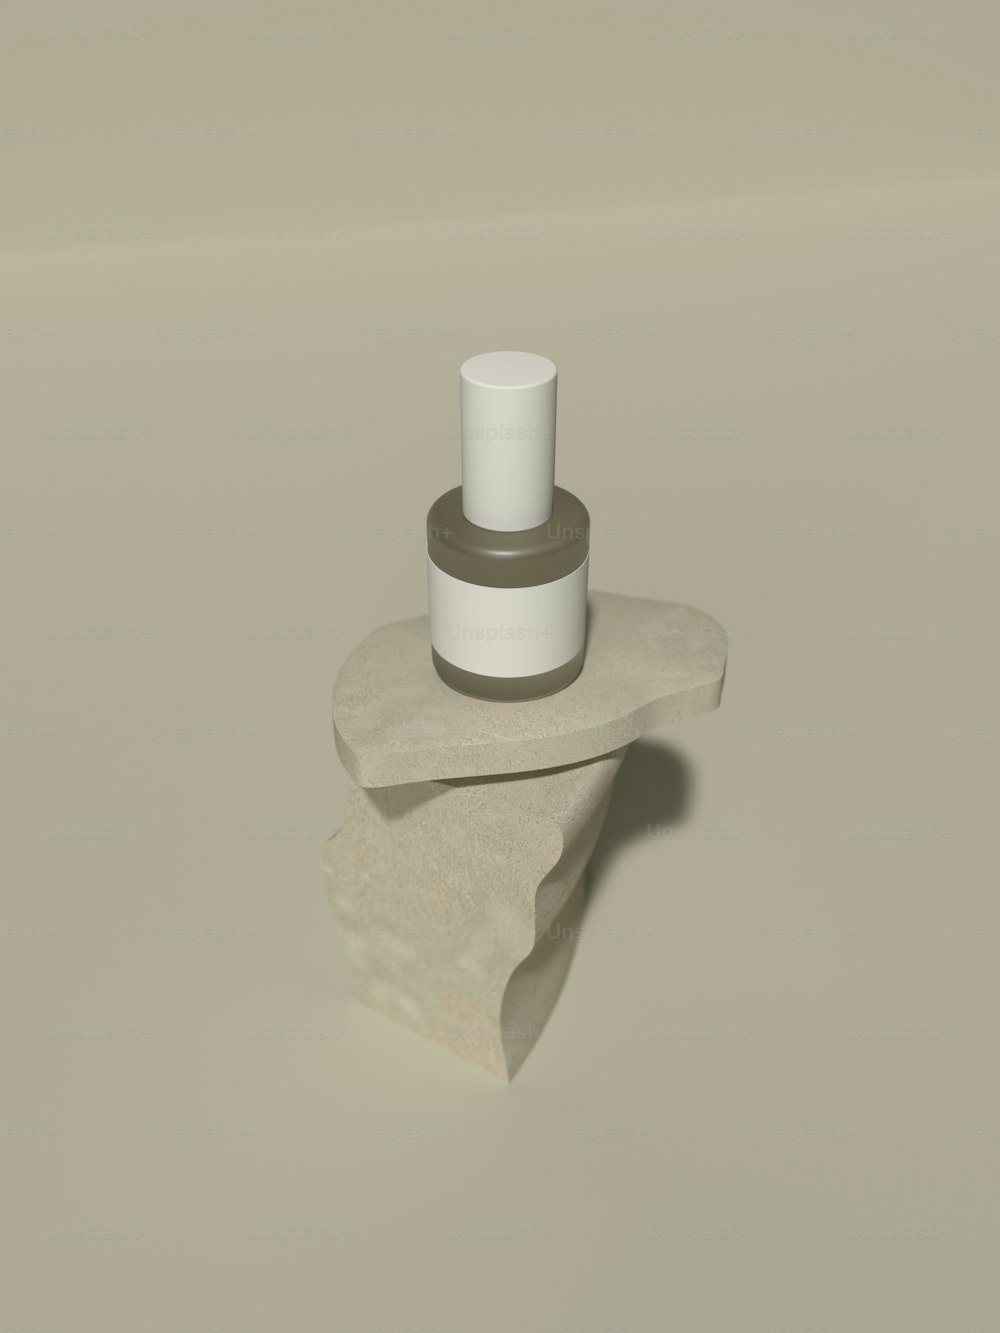 um objeto cilíndrico branco com um objeto branco em uma superfície branca